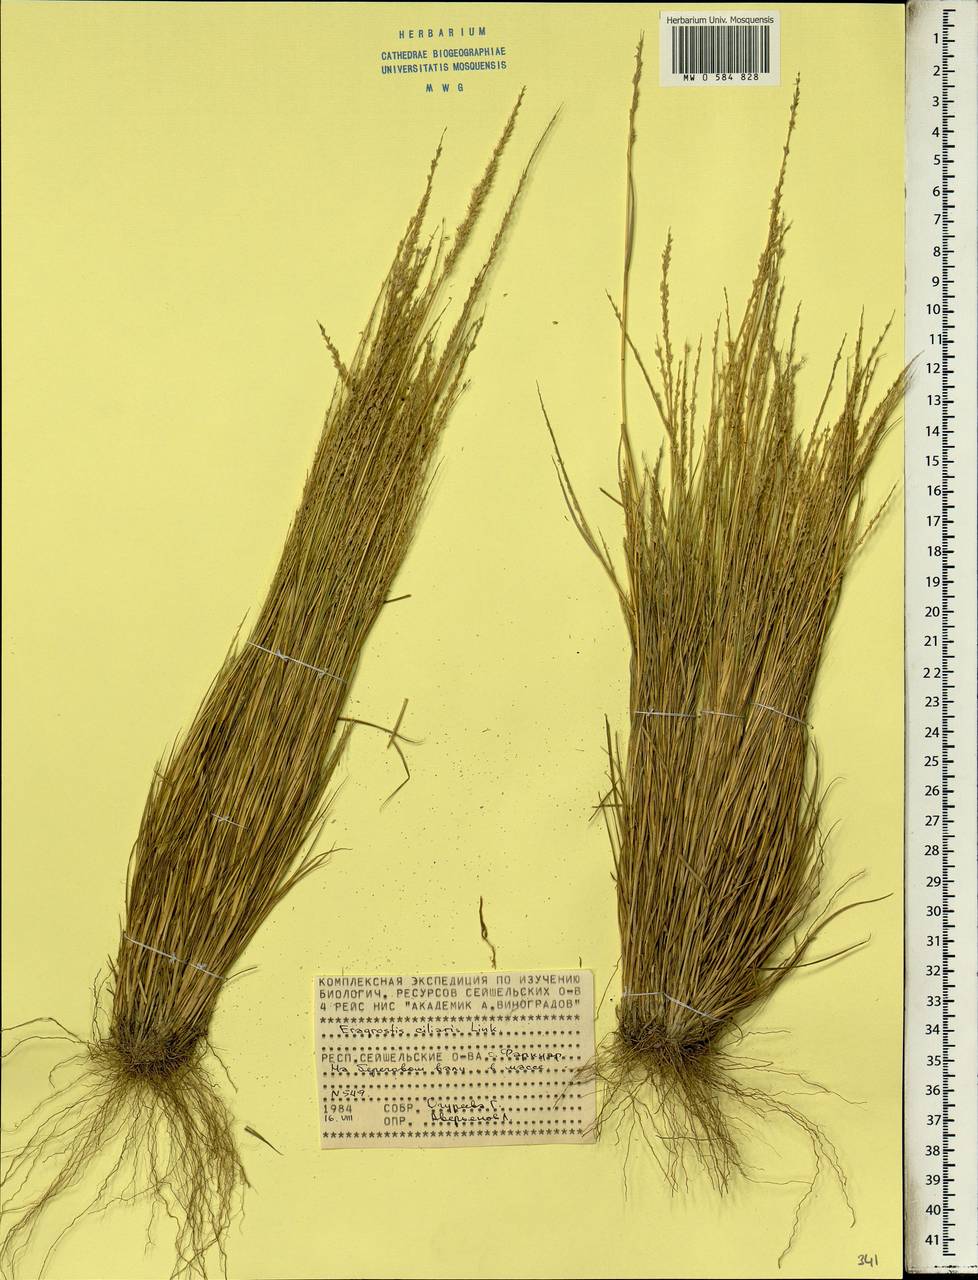 Eragrostis ciliaris (L.) R.Br., Africa (AFR) (Seychelles)